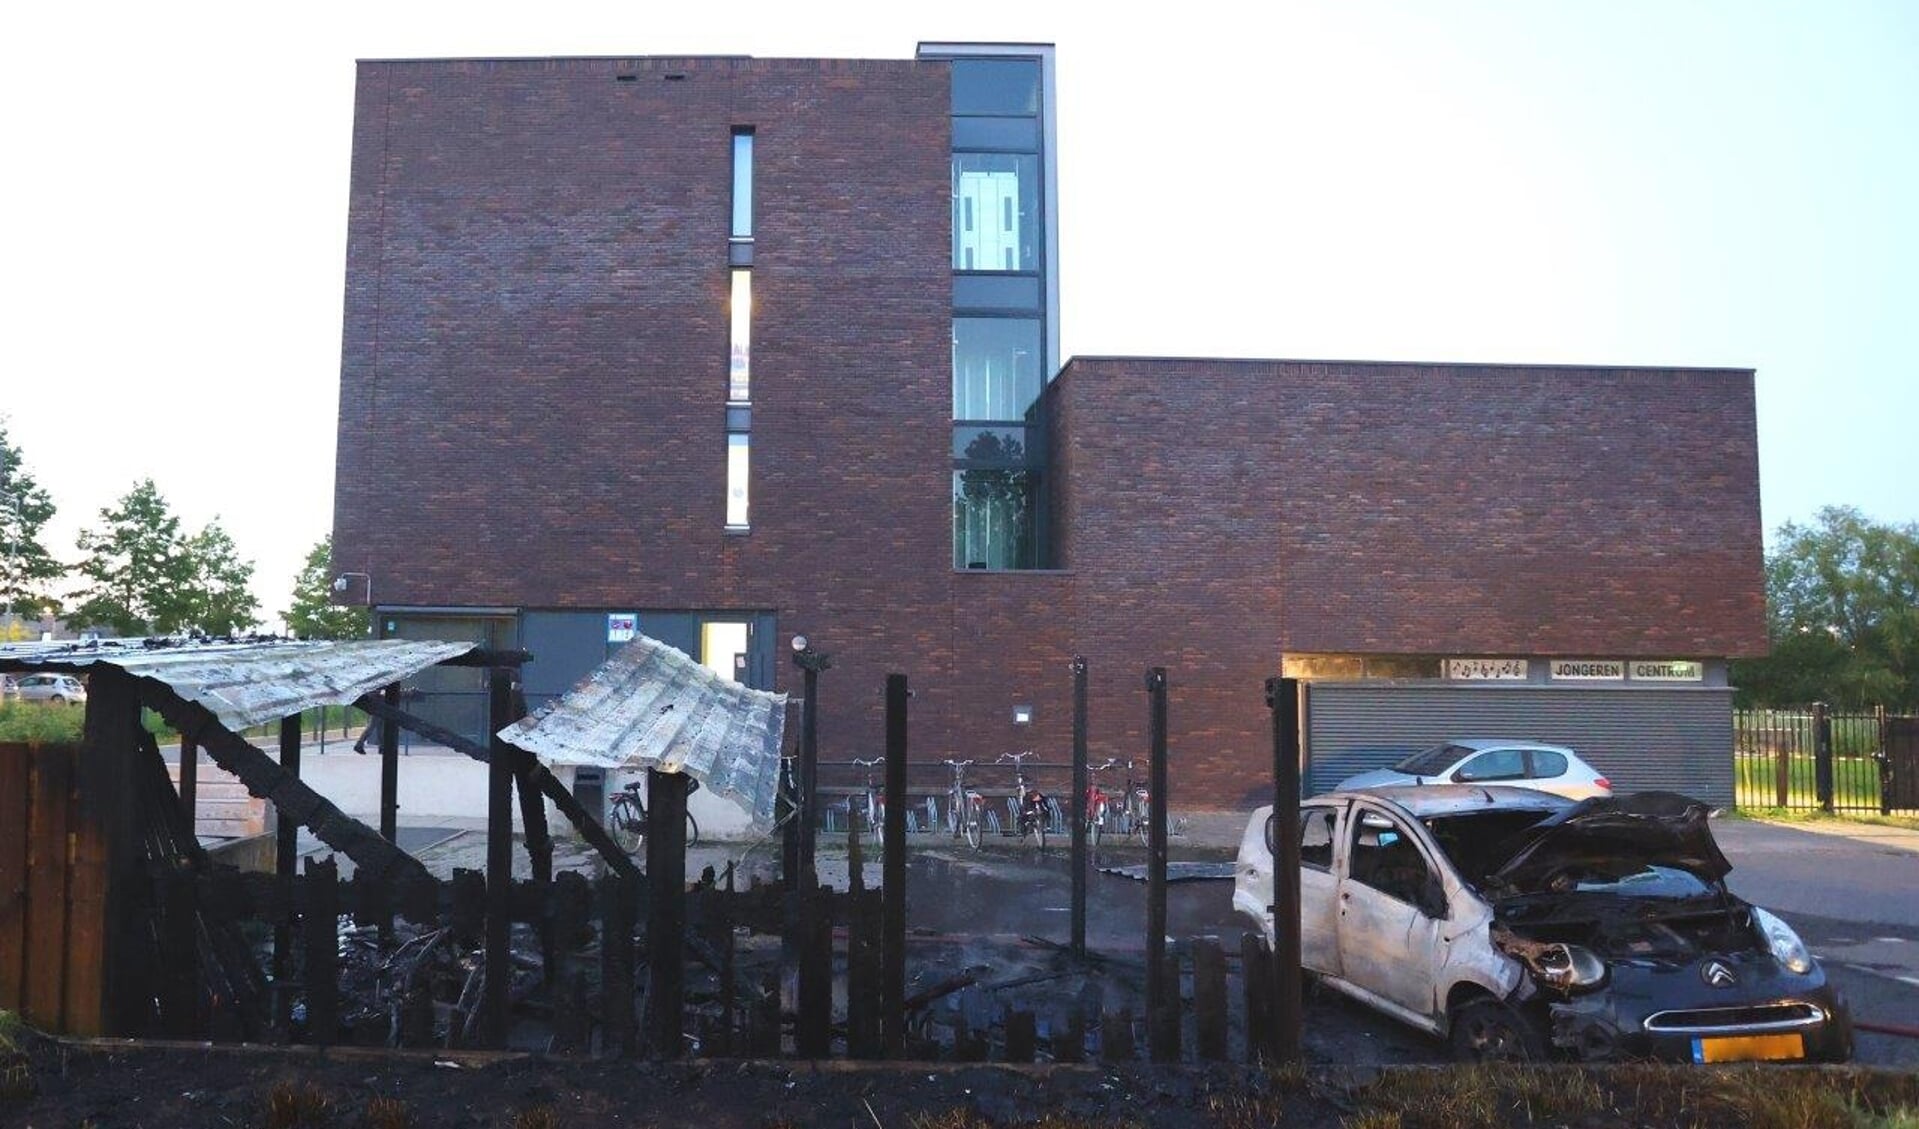 Bij jongerencentrum Noord aan het Geerke in Den Bosch zijn donderdagavond een fietsenstalling en auto in vlammen opgegaan.